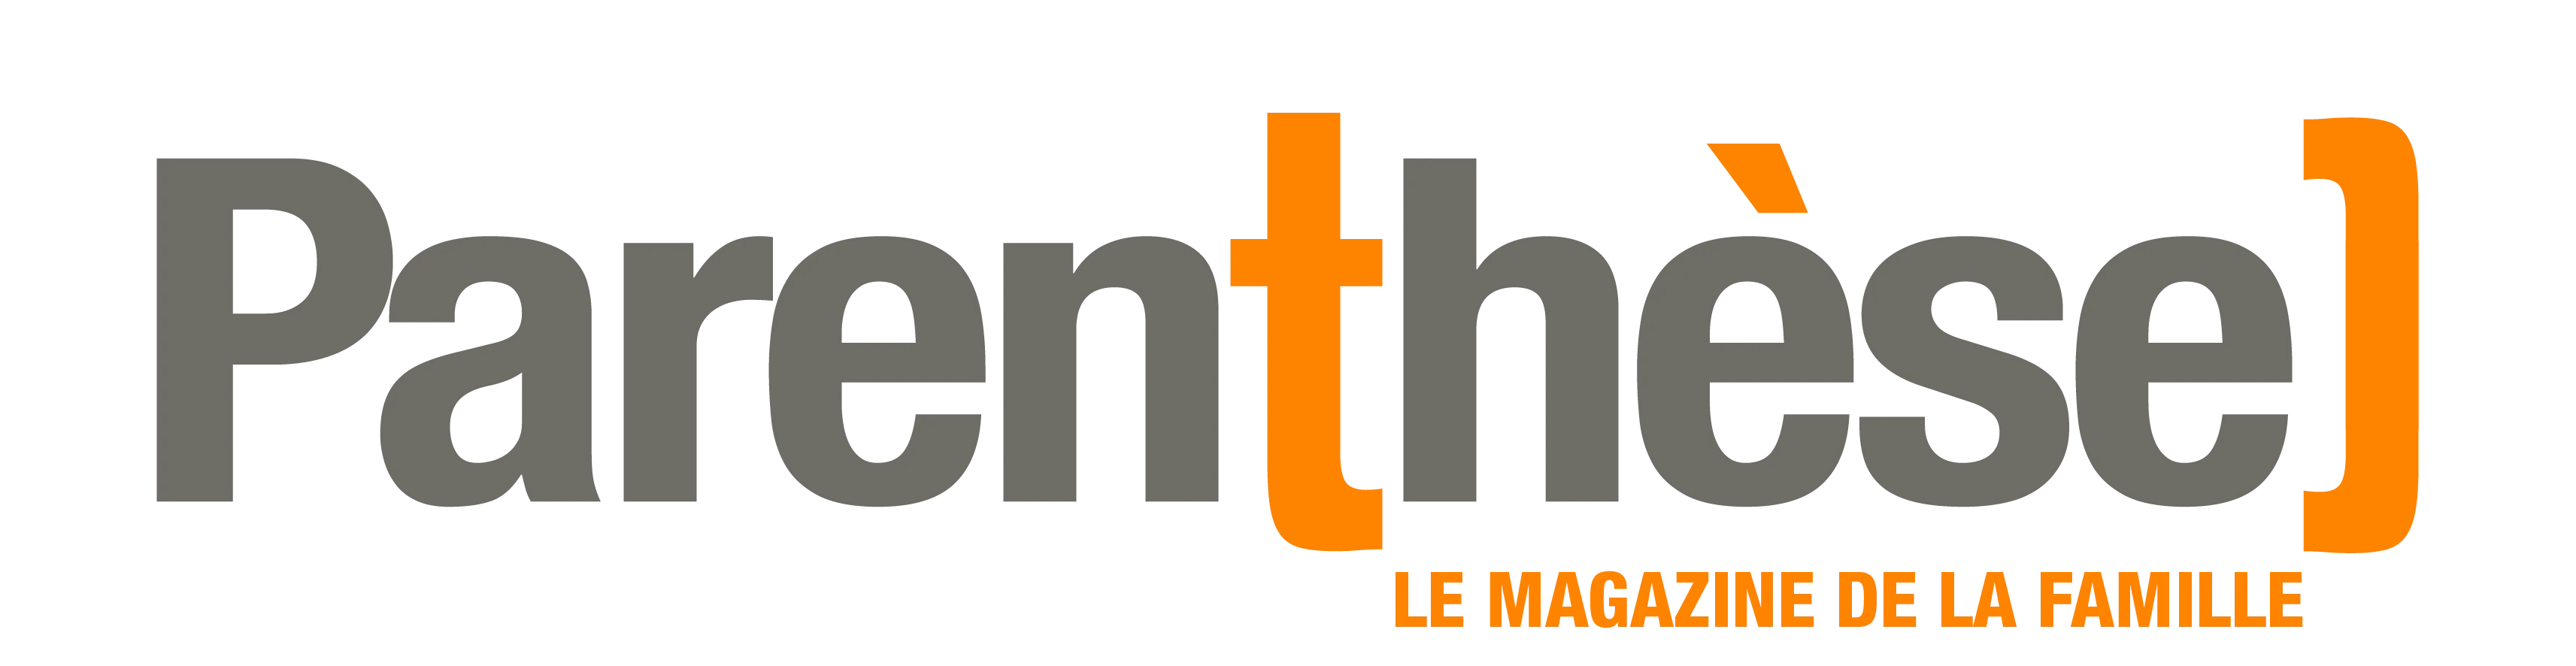 Logo Parenthèse